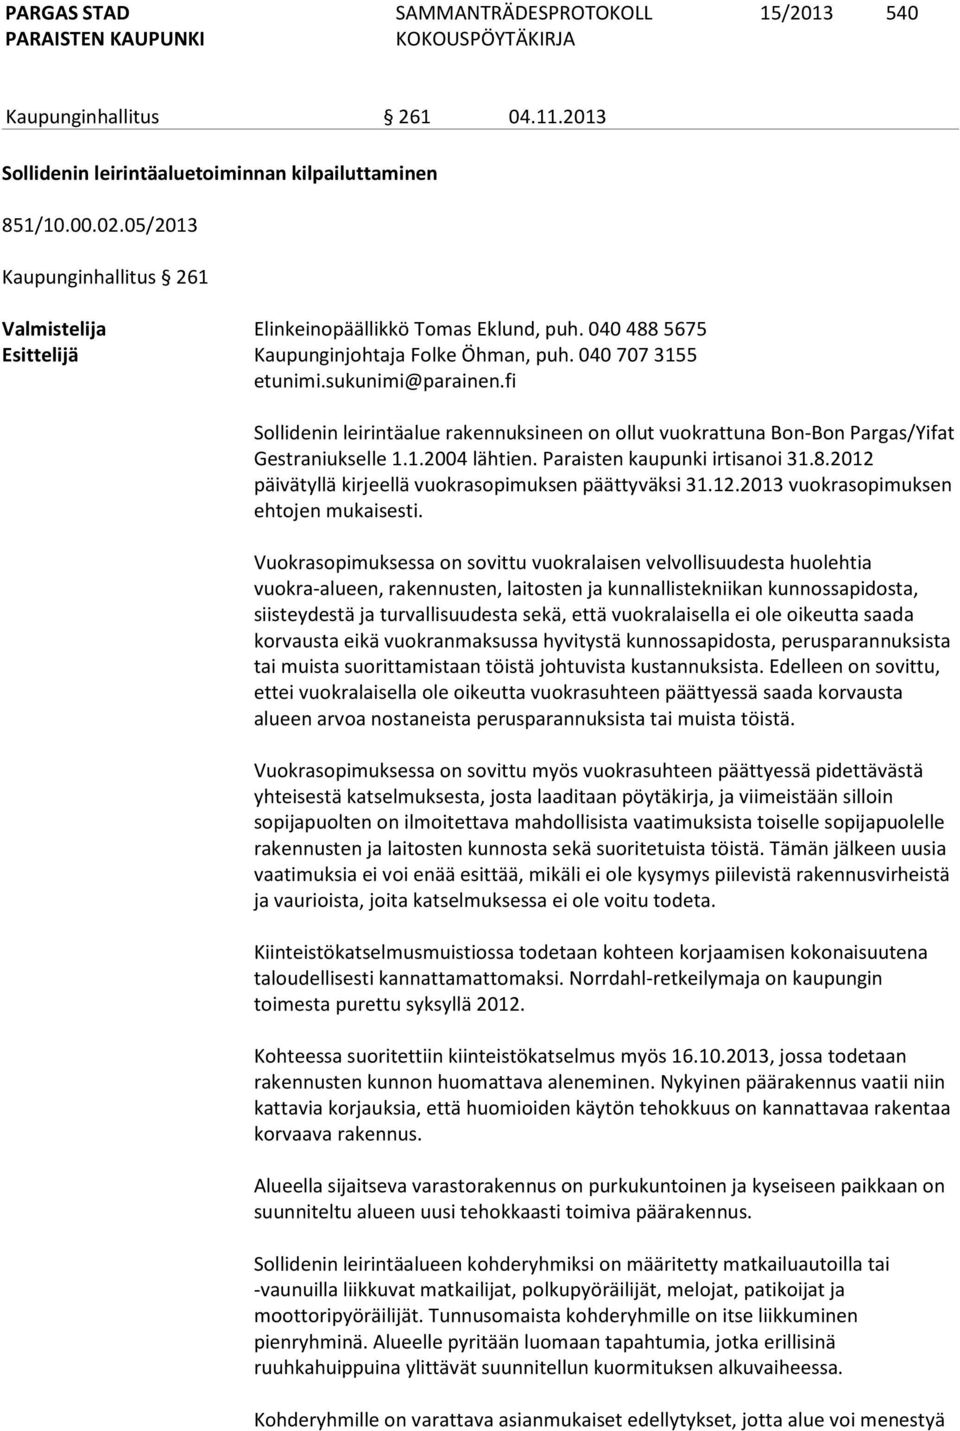 1.2004 lähtien. Paraisten kaupunki irtisanoi 31.8.2012 päivätyllä kirjeellä vuokrasopimuksen päättyväksi 31.12.2013 vuokrasopimuksen ehtojen mukaisesti.